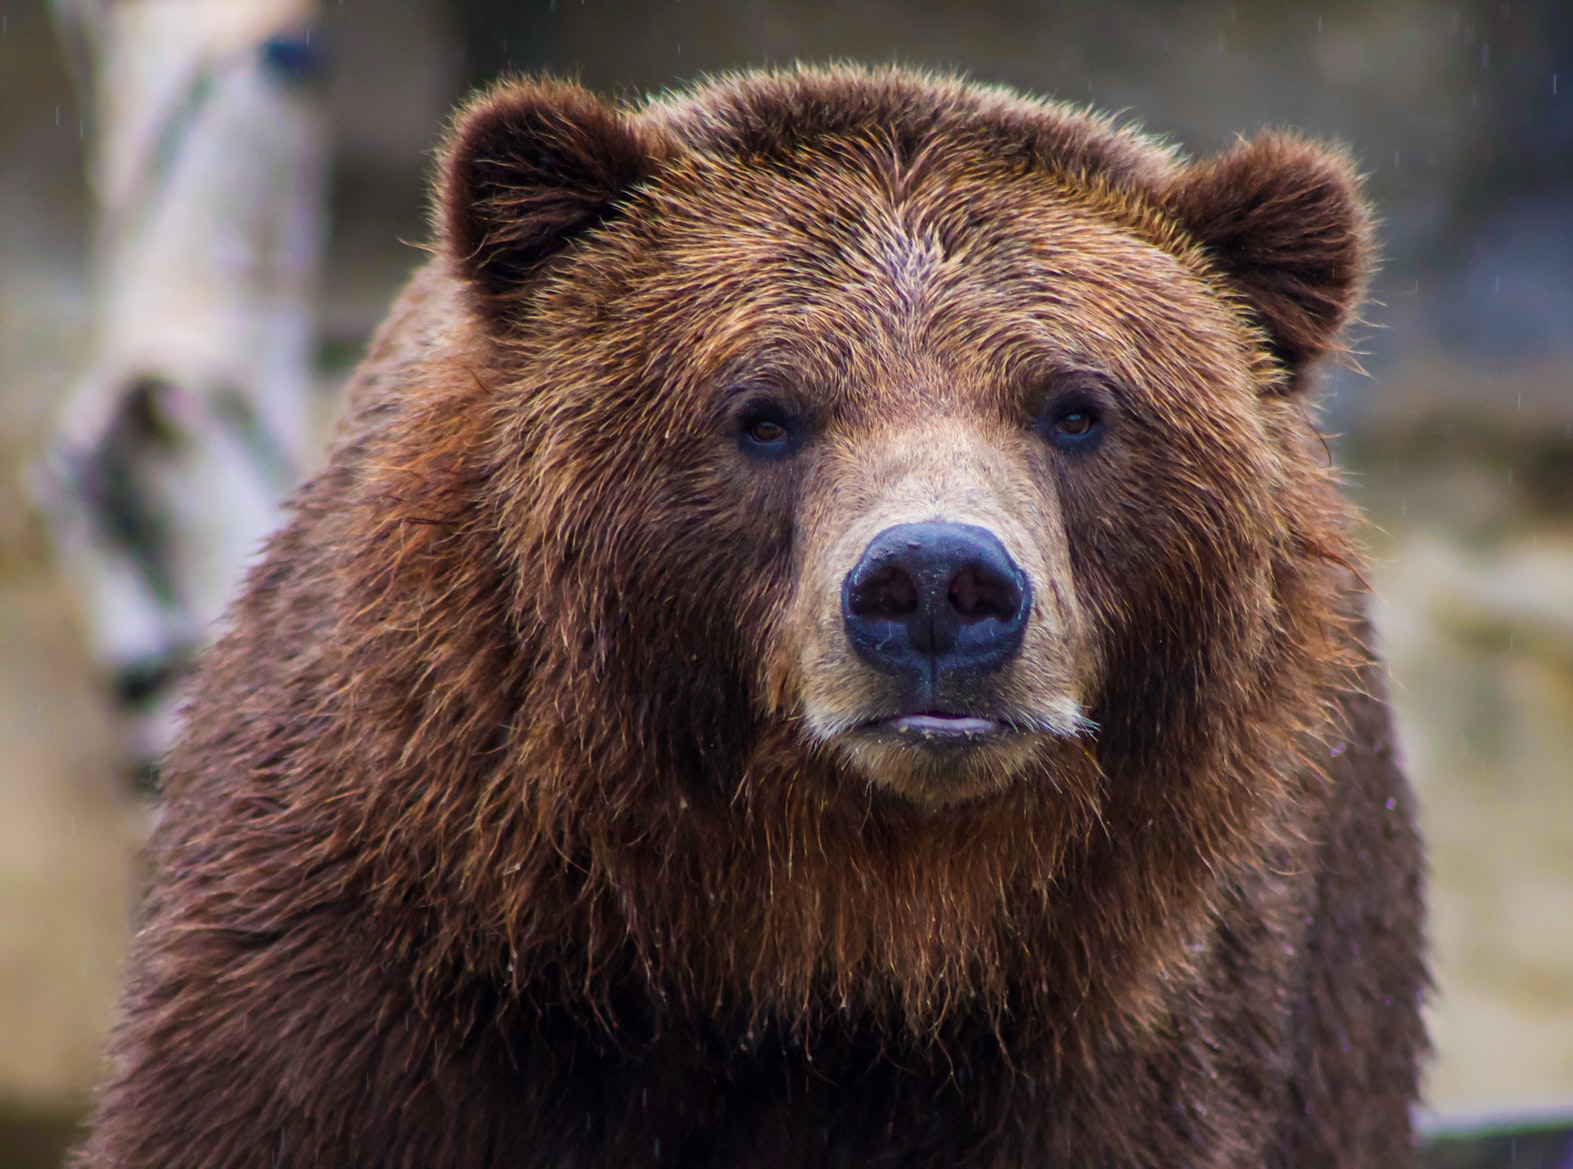 Na eerdere botsingen met mensen doodt beer hardloper.